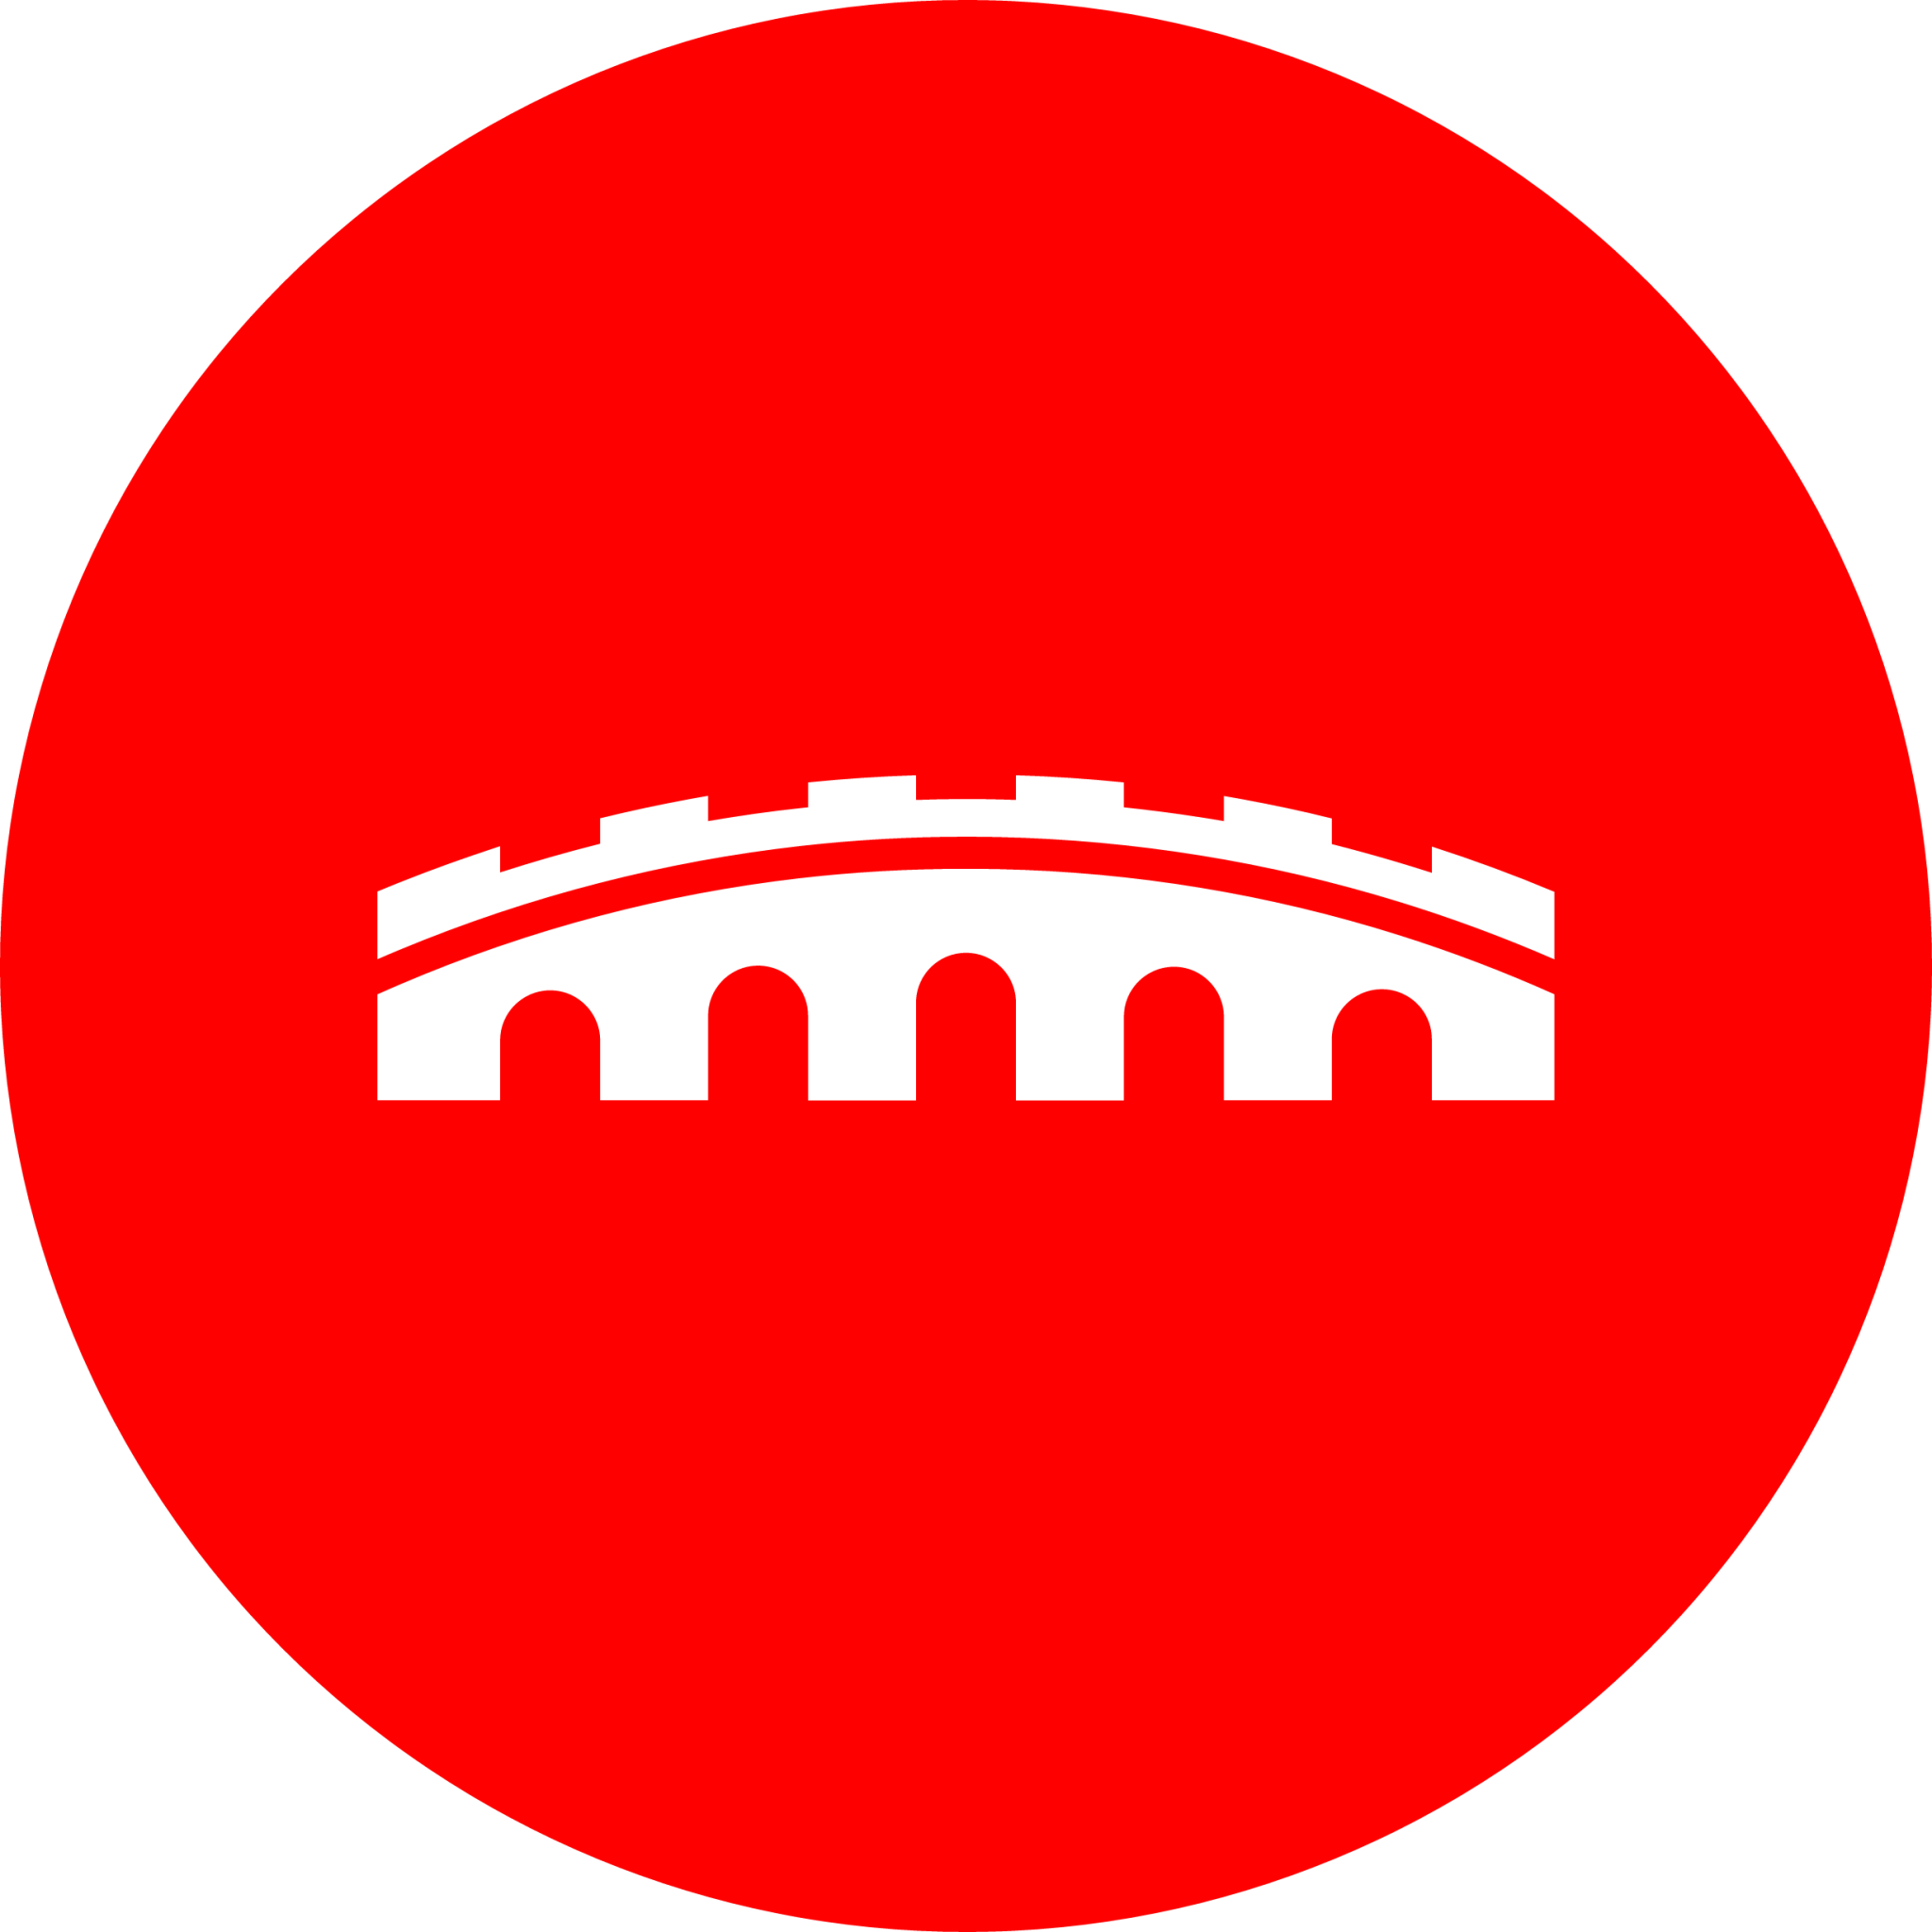 ArenaNet icon